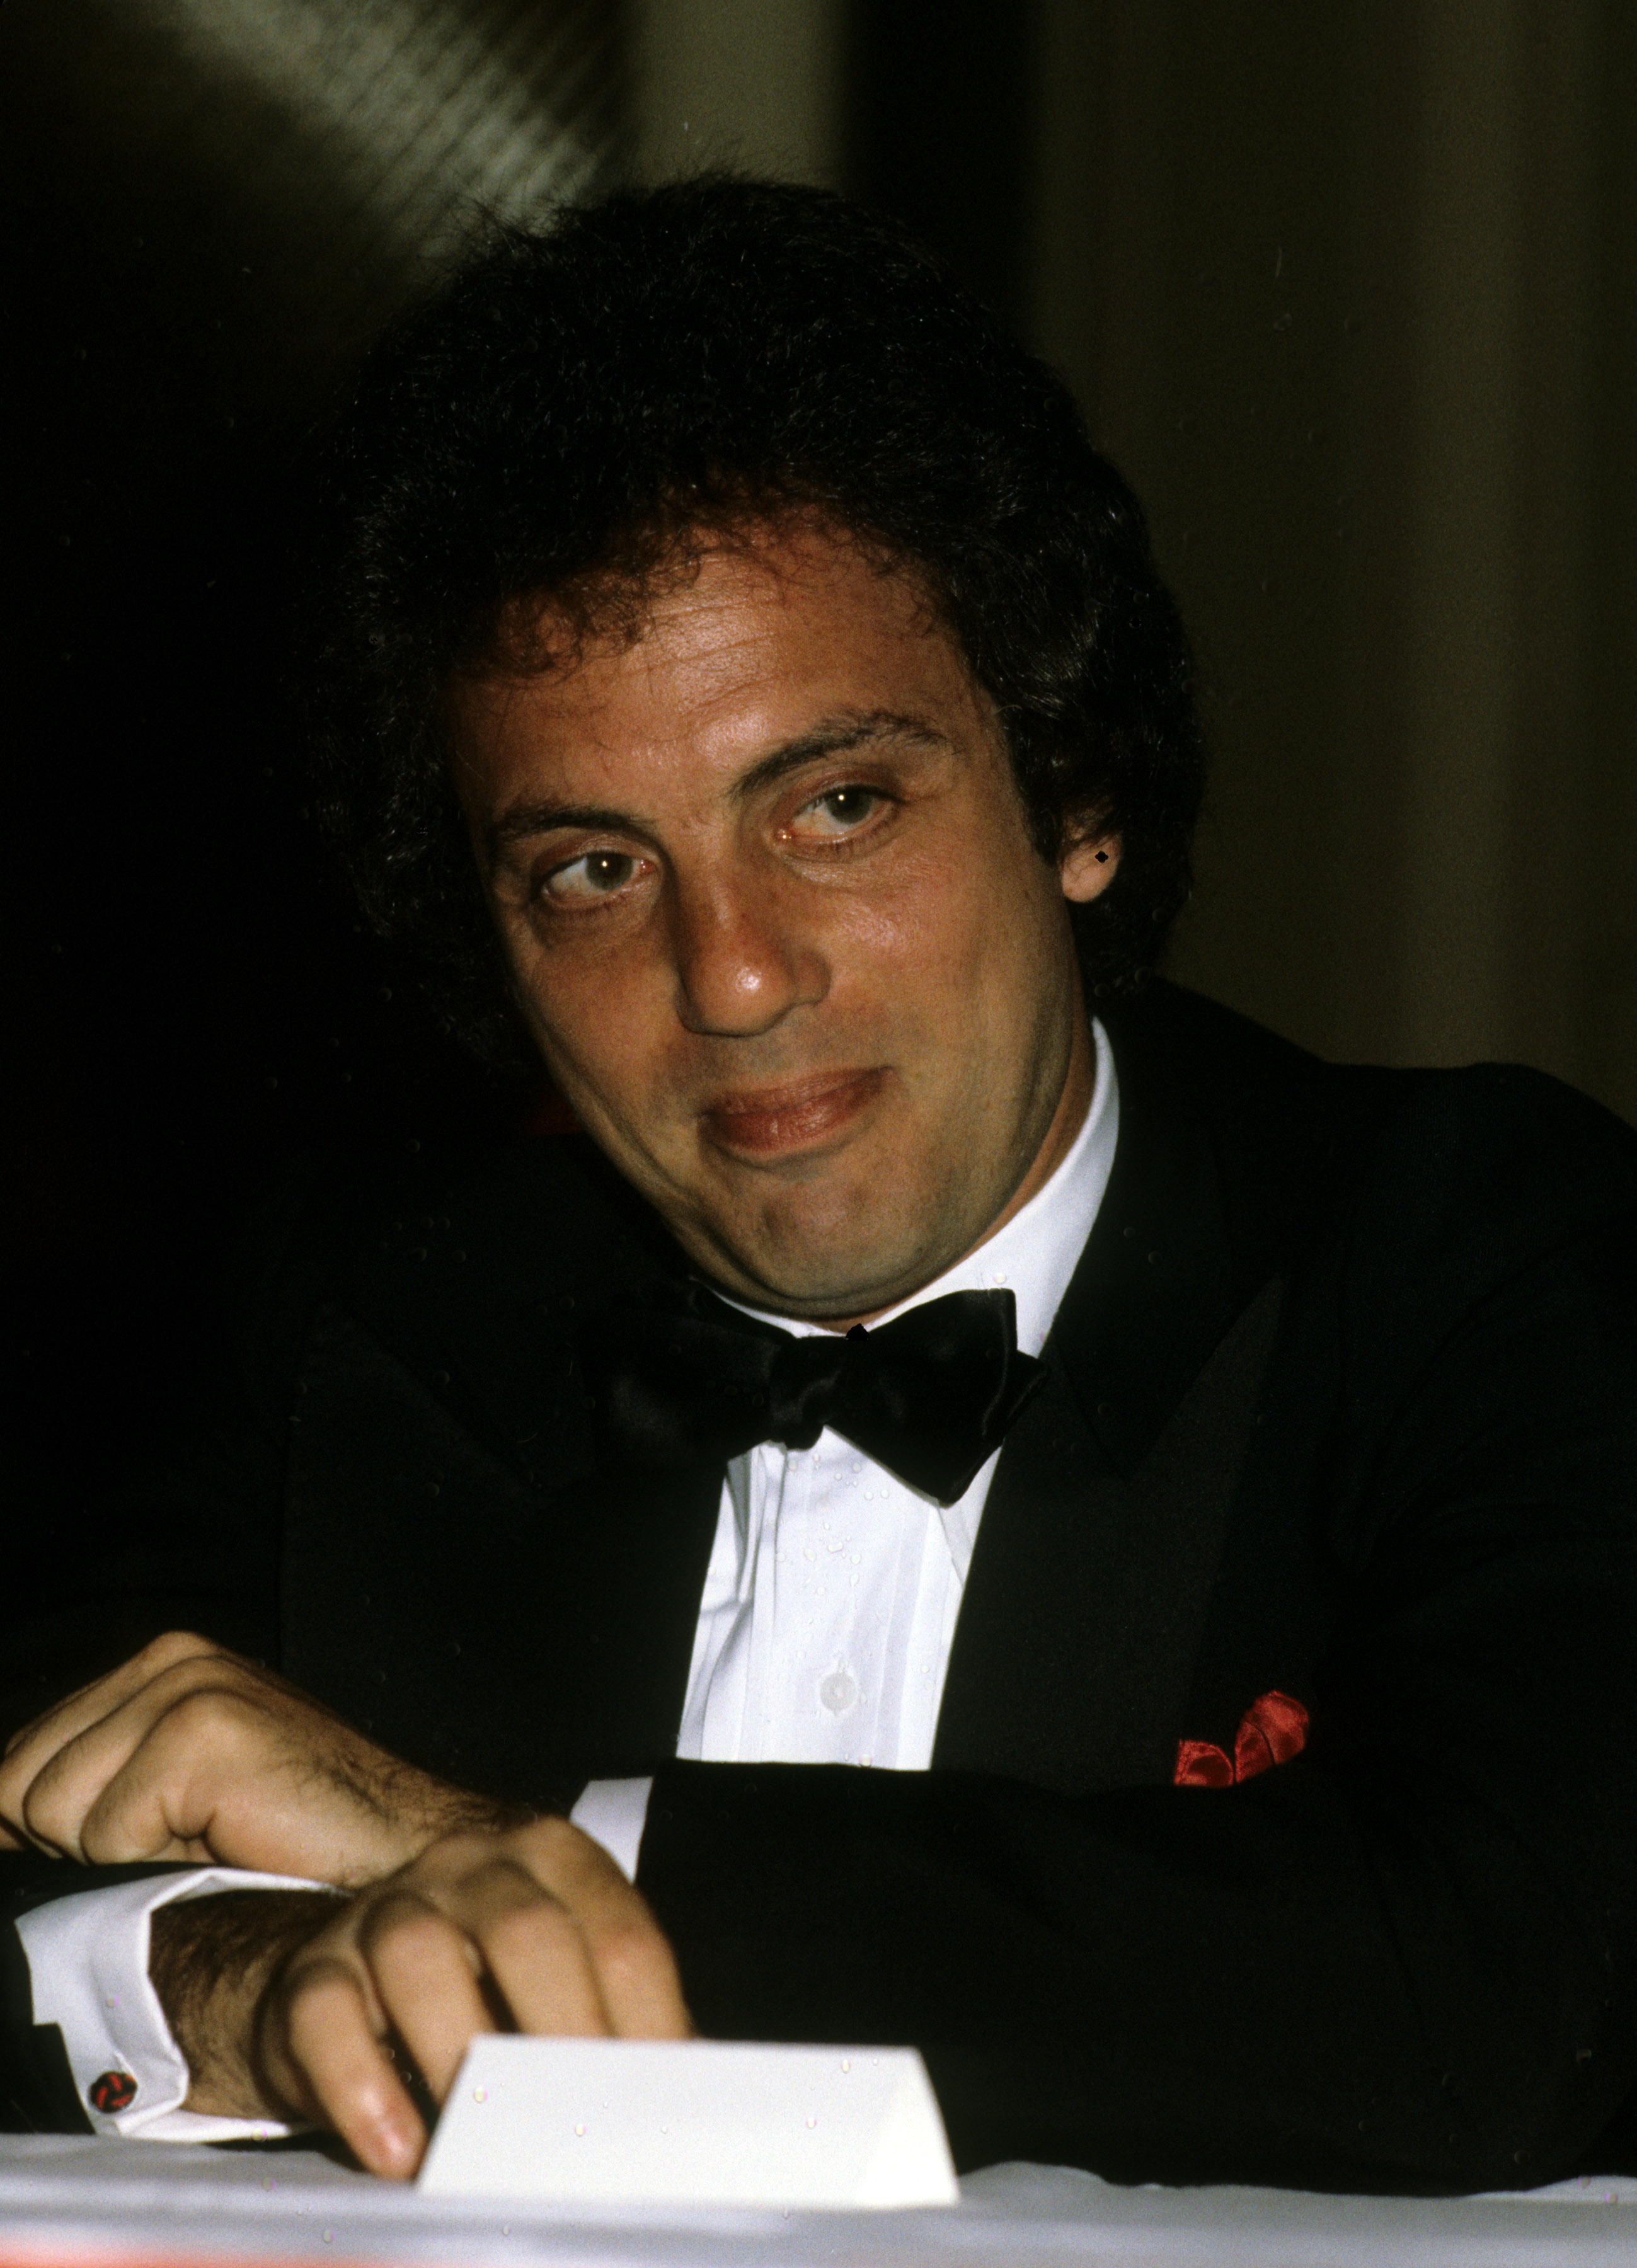 Ein Porträt von Billy Joel | Quelle: Getty Images